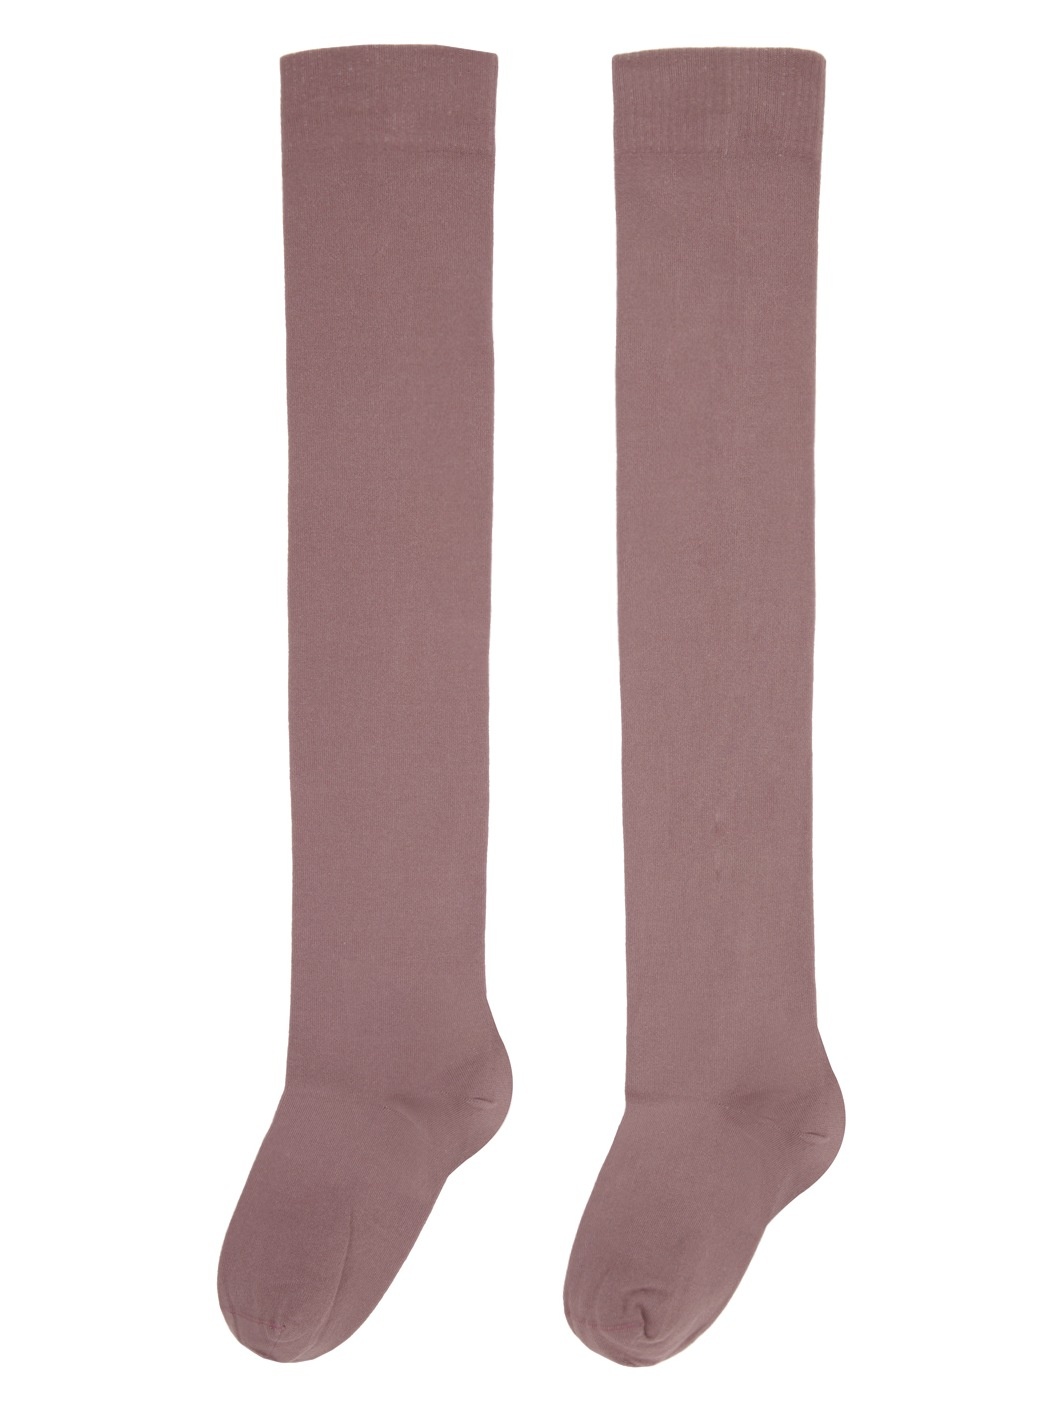 Pink Semi-Sheer Socks - 2